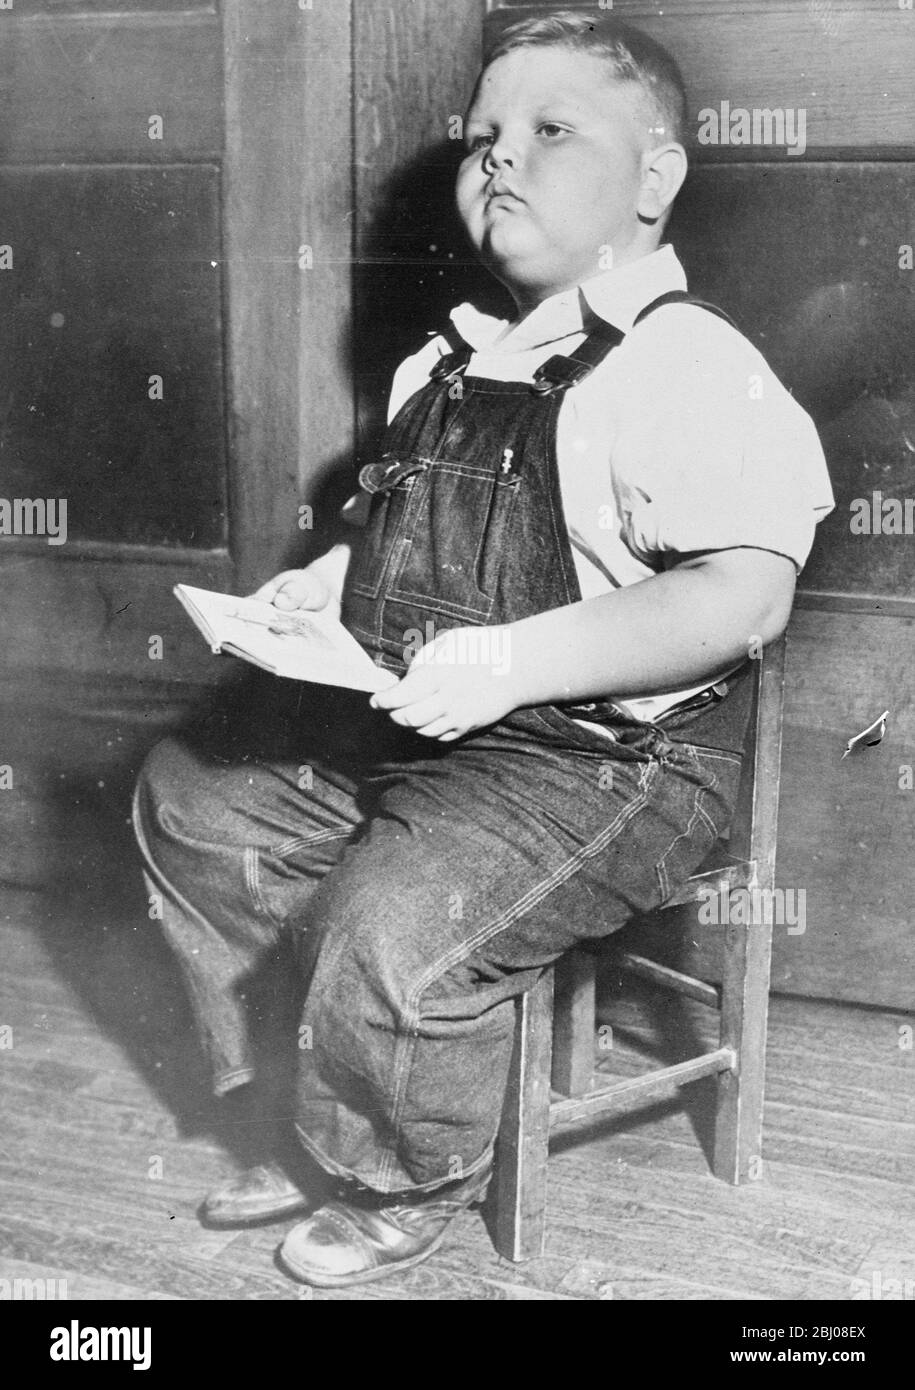 'Chunky'!. - il ragazzo di cinque anni ha modo di 110 libbre. - Laurence J Rudy, Jr, di Kansas, Missouri, che pesa 110 libbre, indossa tute fatte per un 18-anno-vecchio e taglia 16 in camicie. - Lawrence è conosciuto ai suoi amici della scuola dal soprannome "Chunky". Nonostante la sua massa, è un allievo intelligente e attento. - 19 ottobre 1937 - Foto Stock